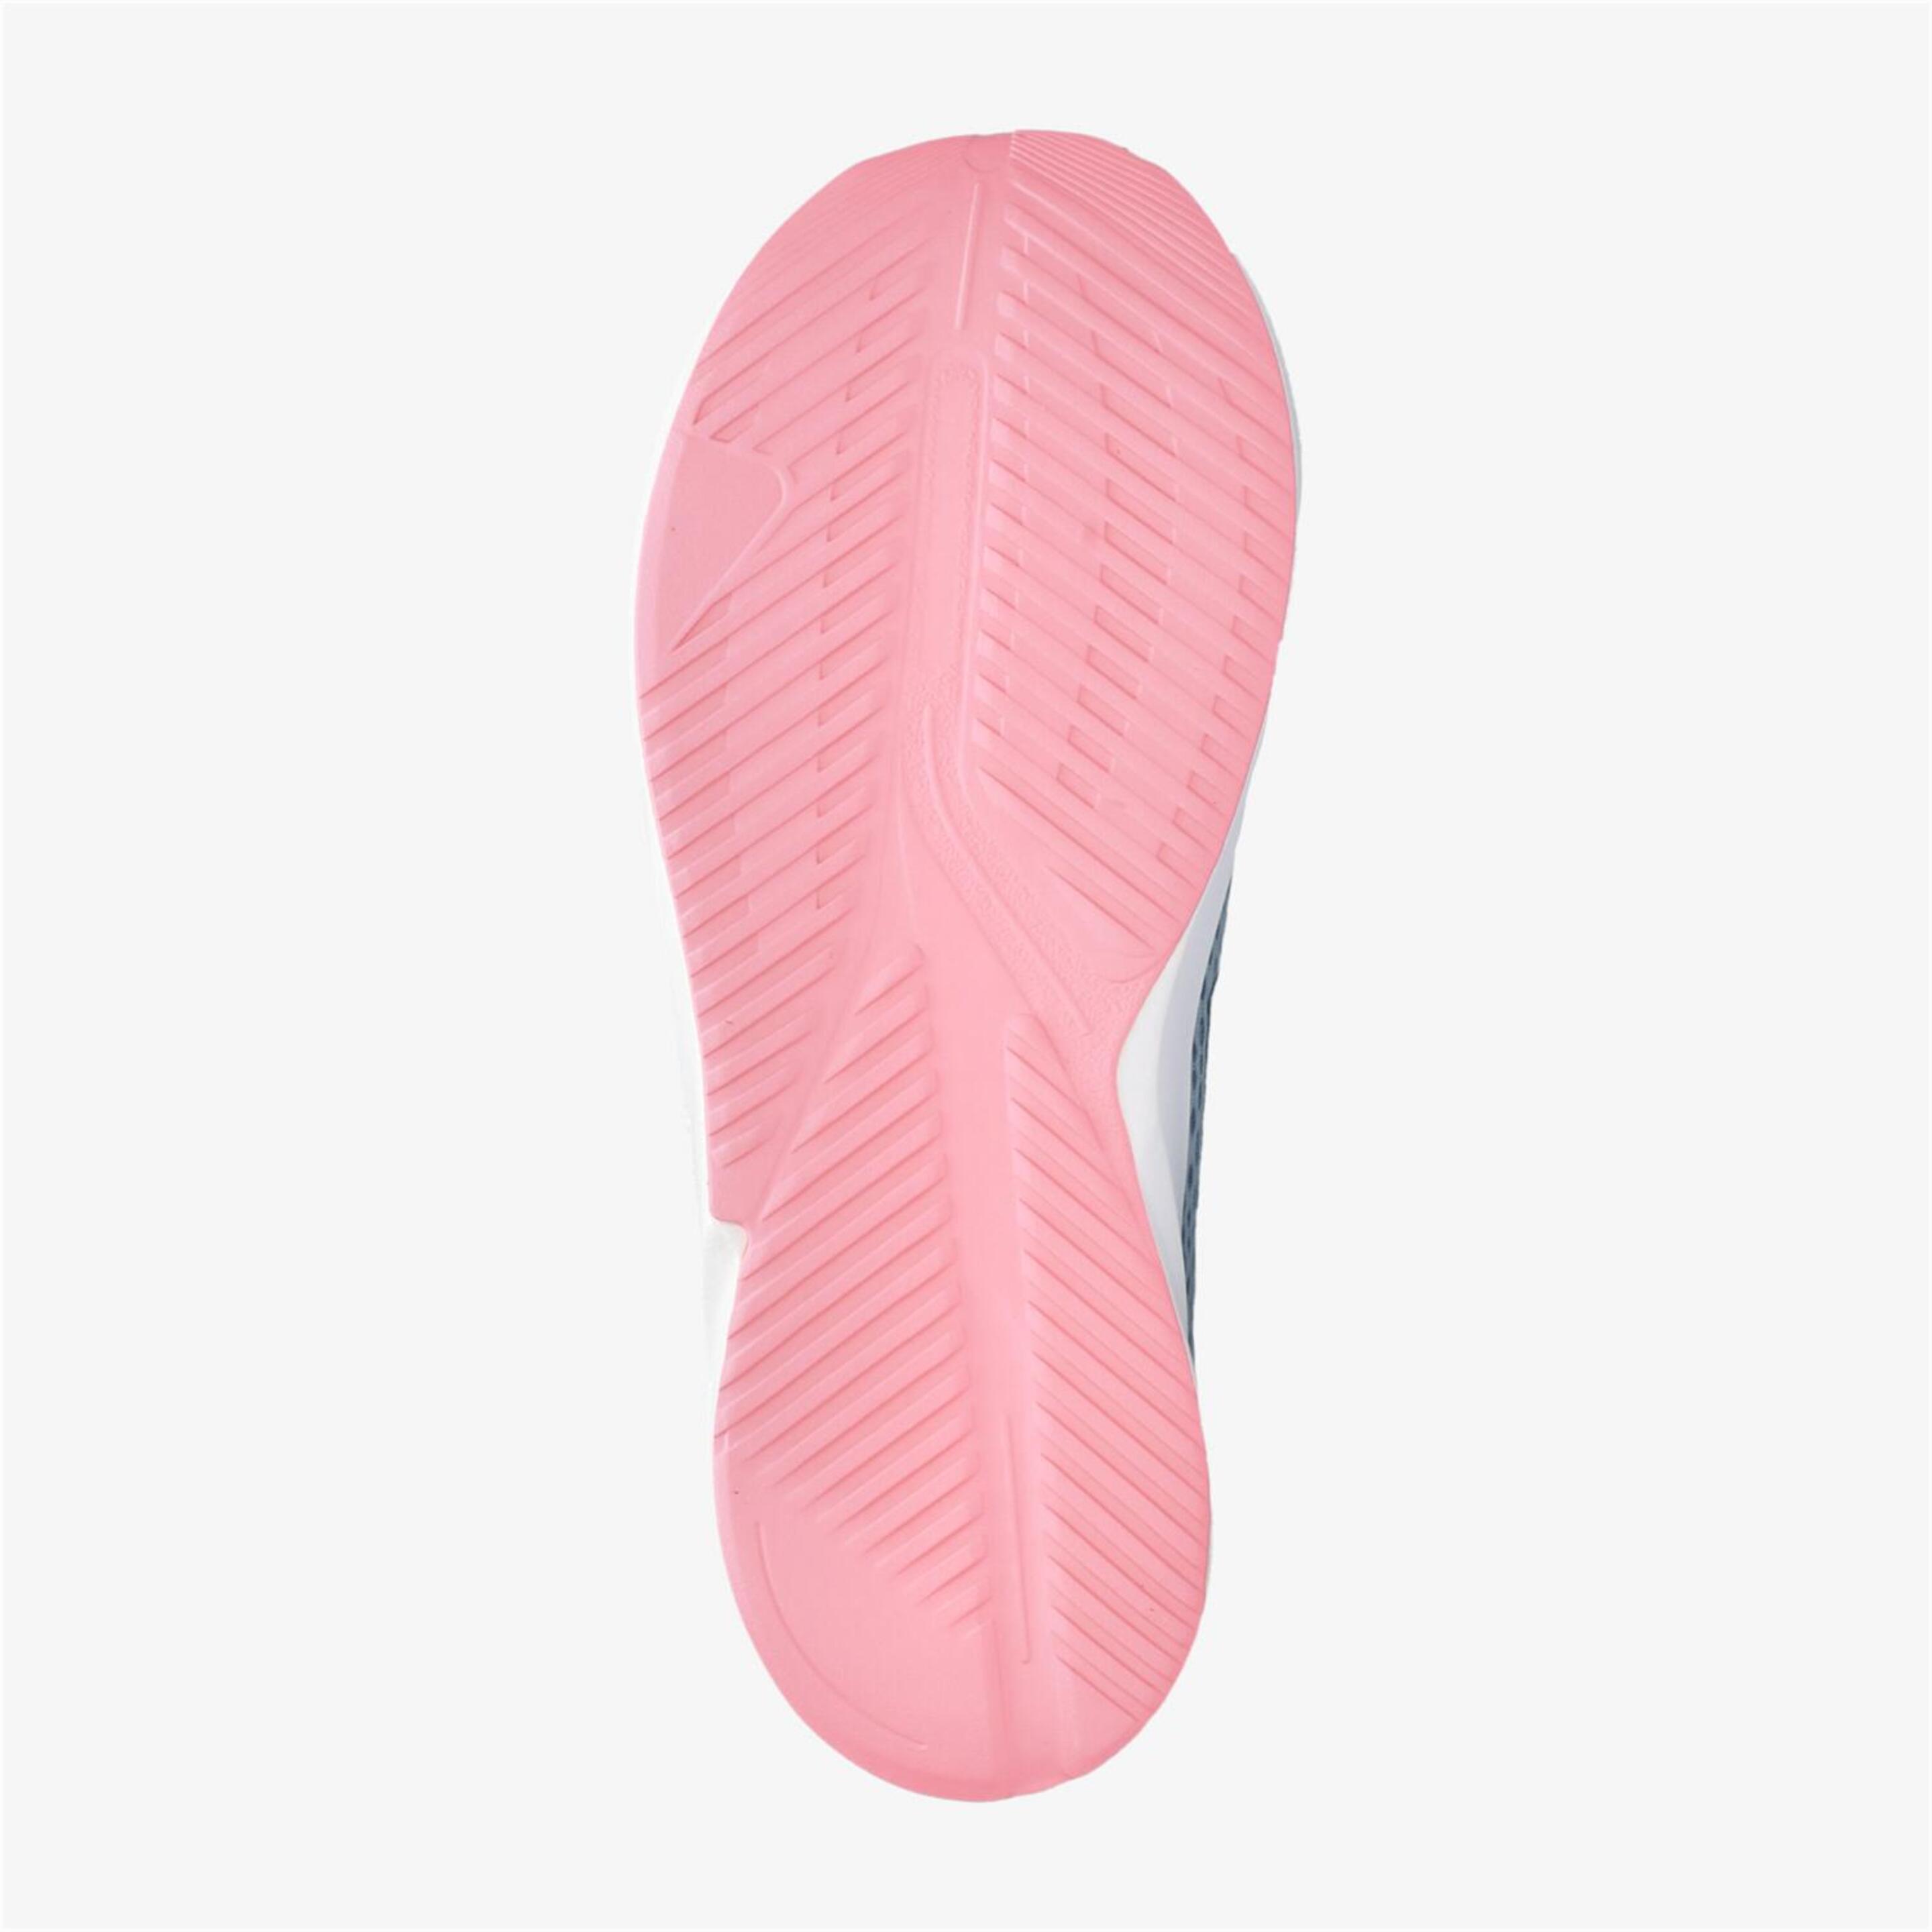 adidas Duramo SL - Gris - Zapatillas Running Niña  | Sprinter